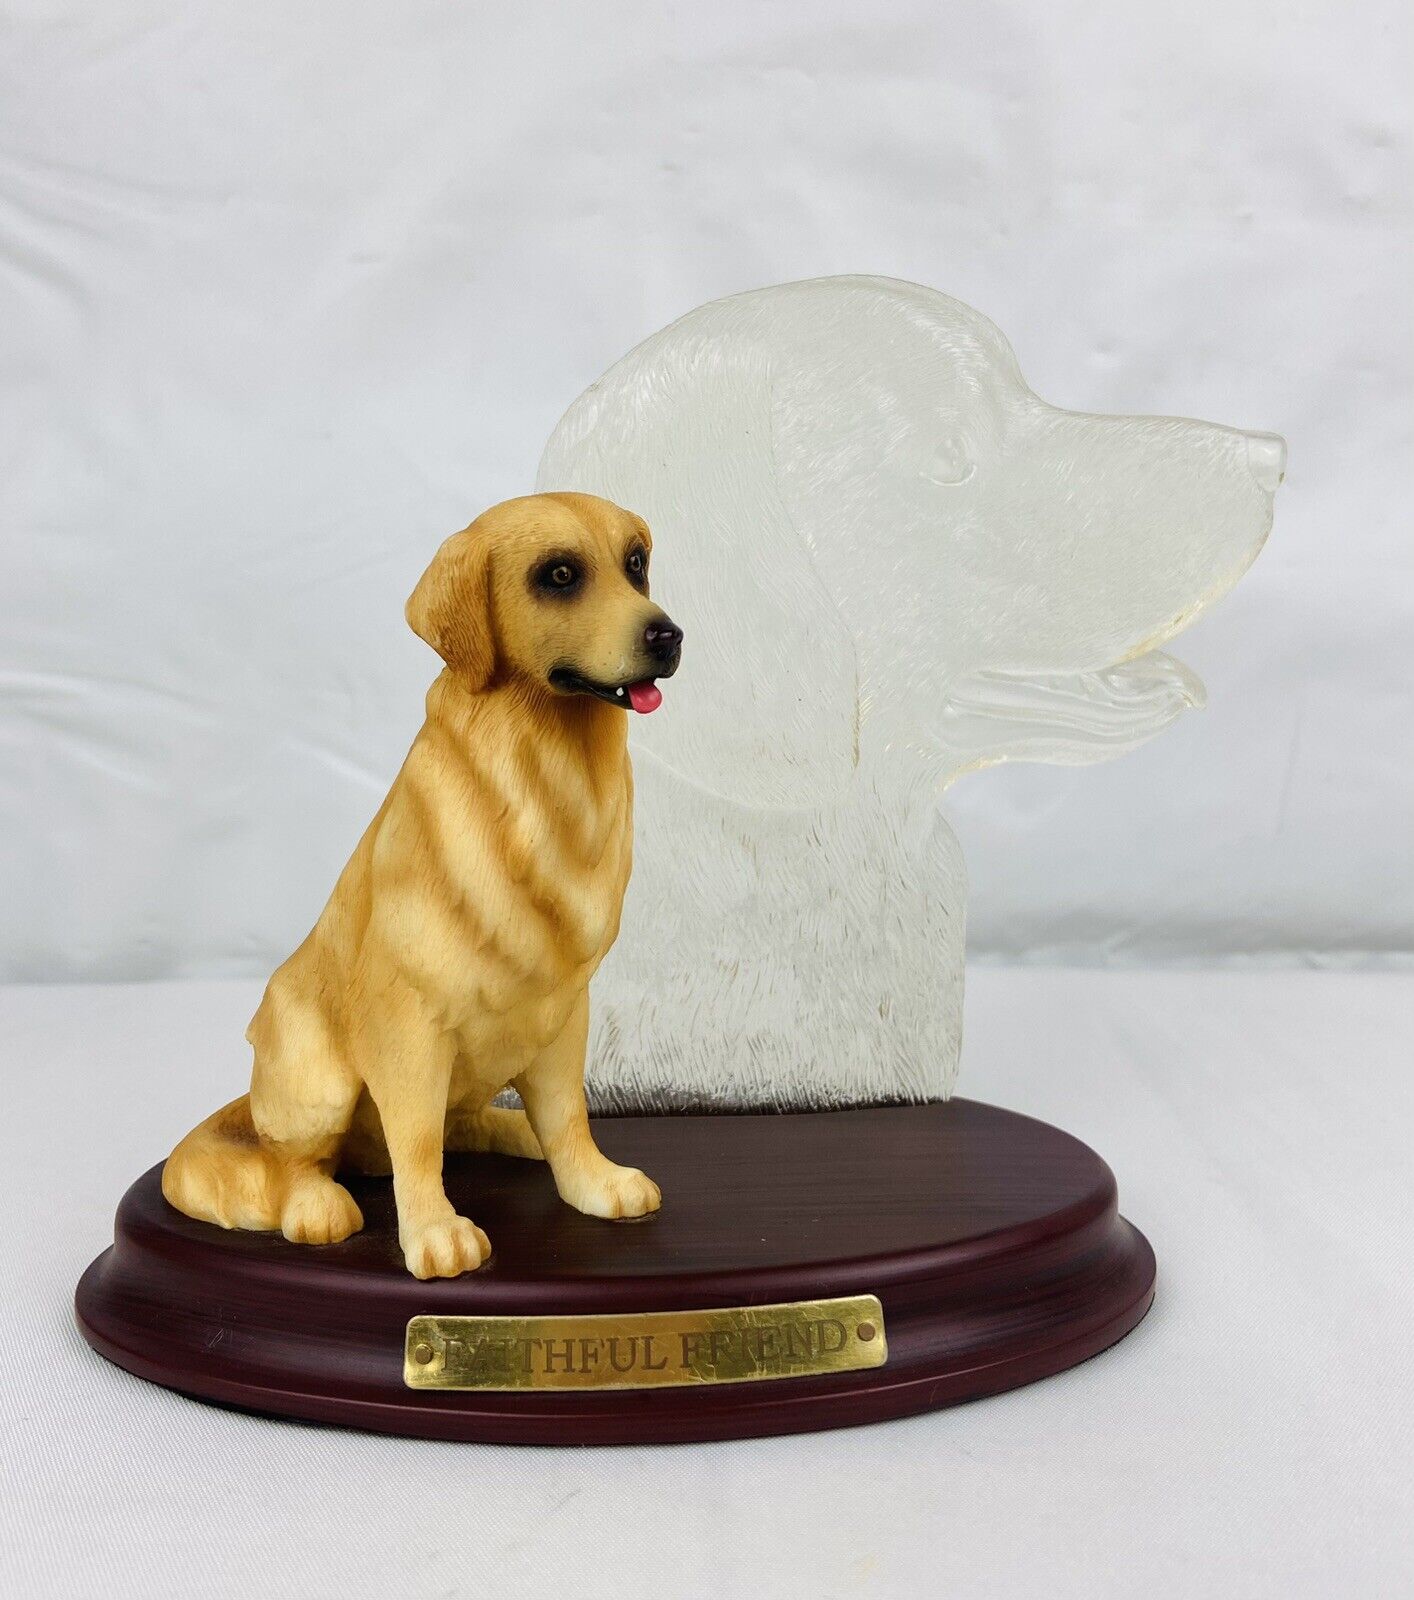 VTG Golden Labrador Retriever Dog Figurine Plaque Faithful Friend Memorial